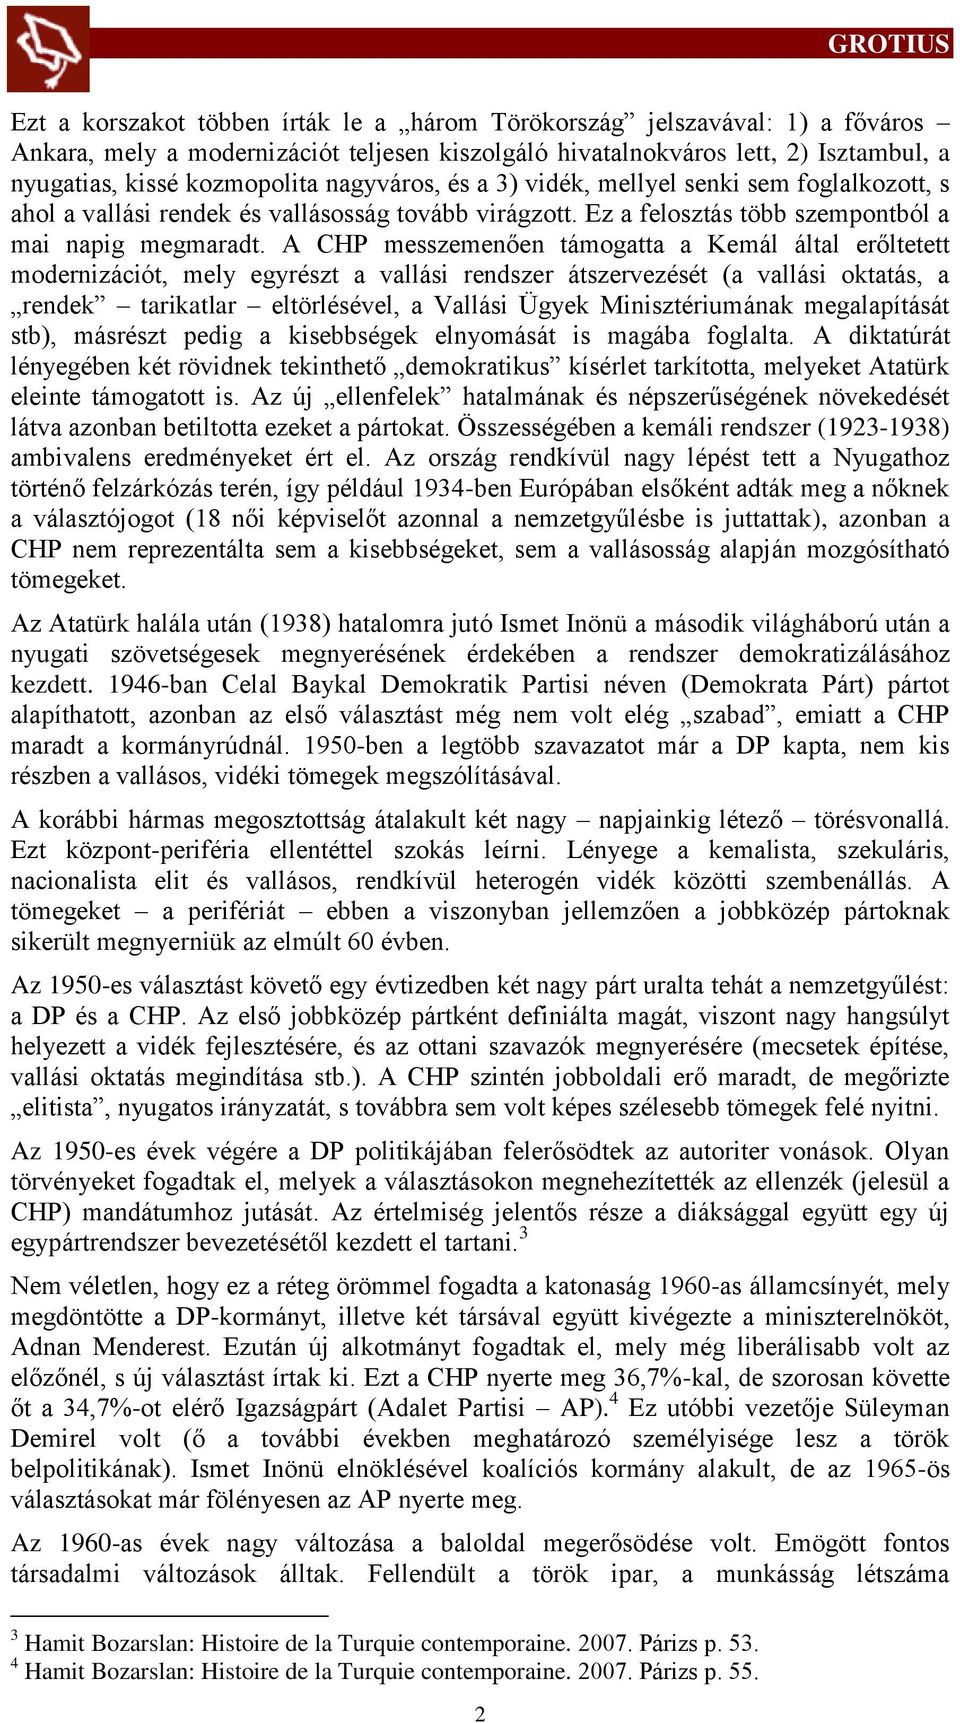 A CHP messzemenően támogatta a Kemál által erőltetett modernizációt, mely egyrészt a vallási rendszer átszervezését (a vallási oktatás, a rendek tarikatlar eltörlésével, a Vallási Ügyek